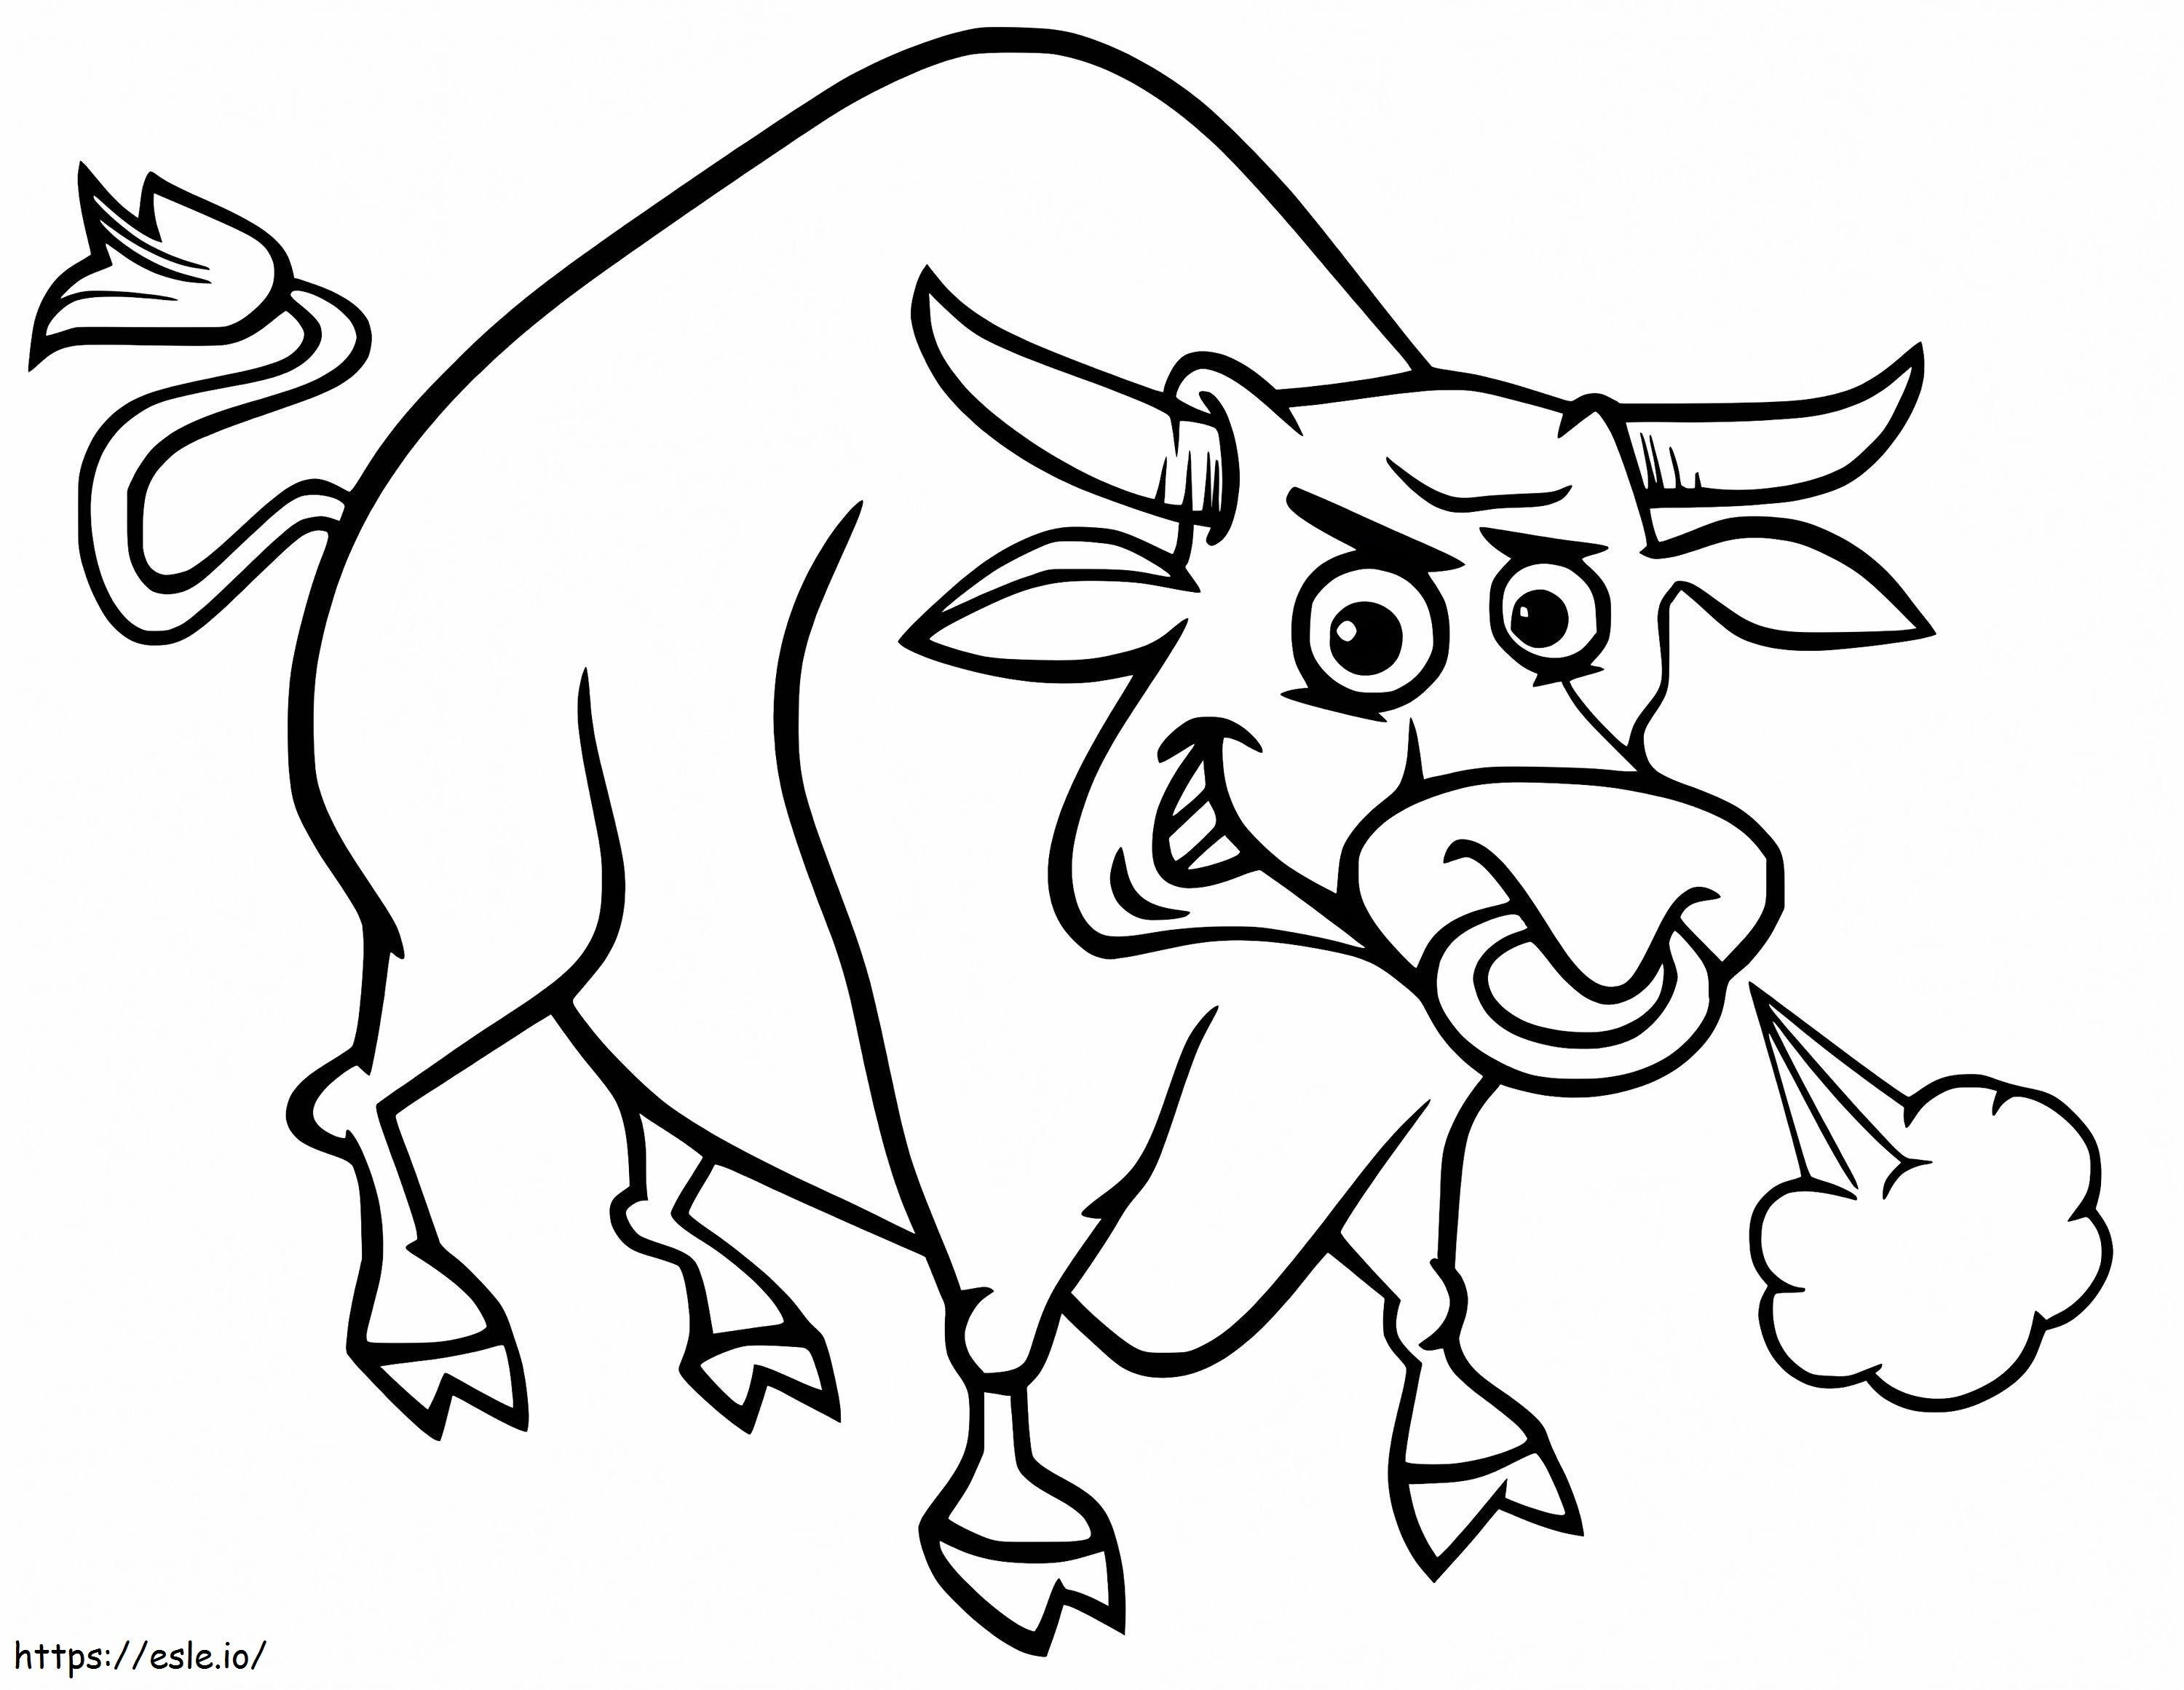 Desenho de touro para colorir